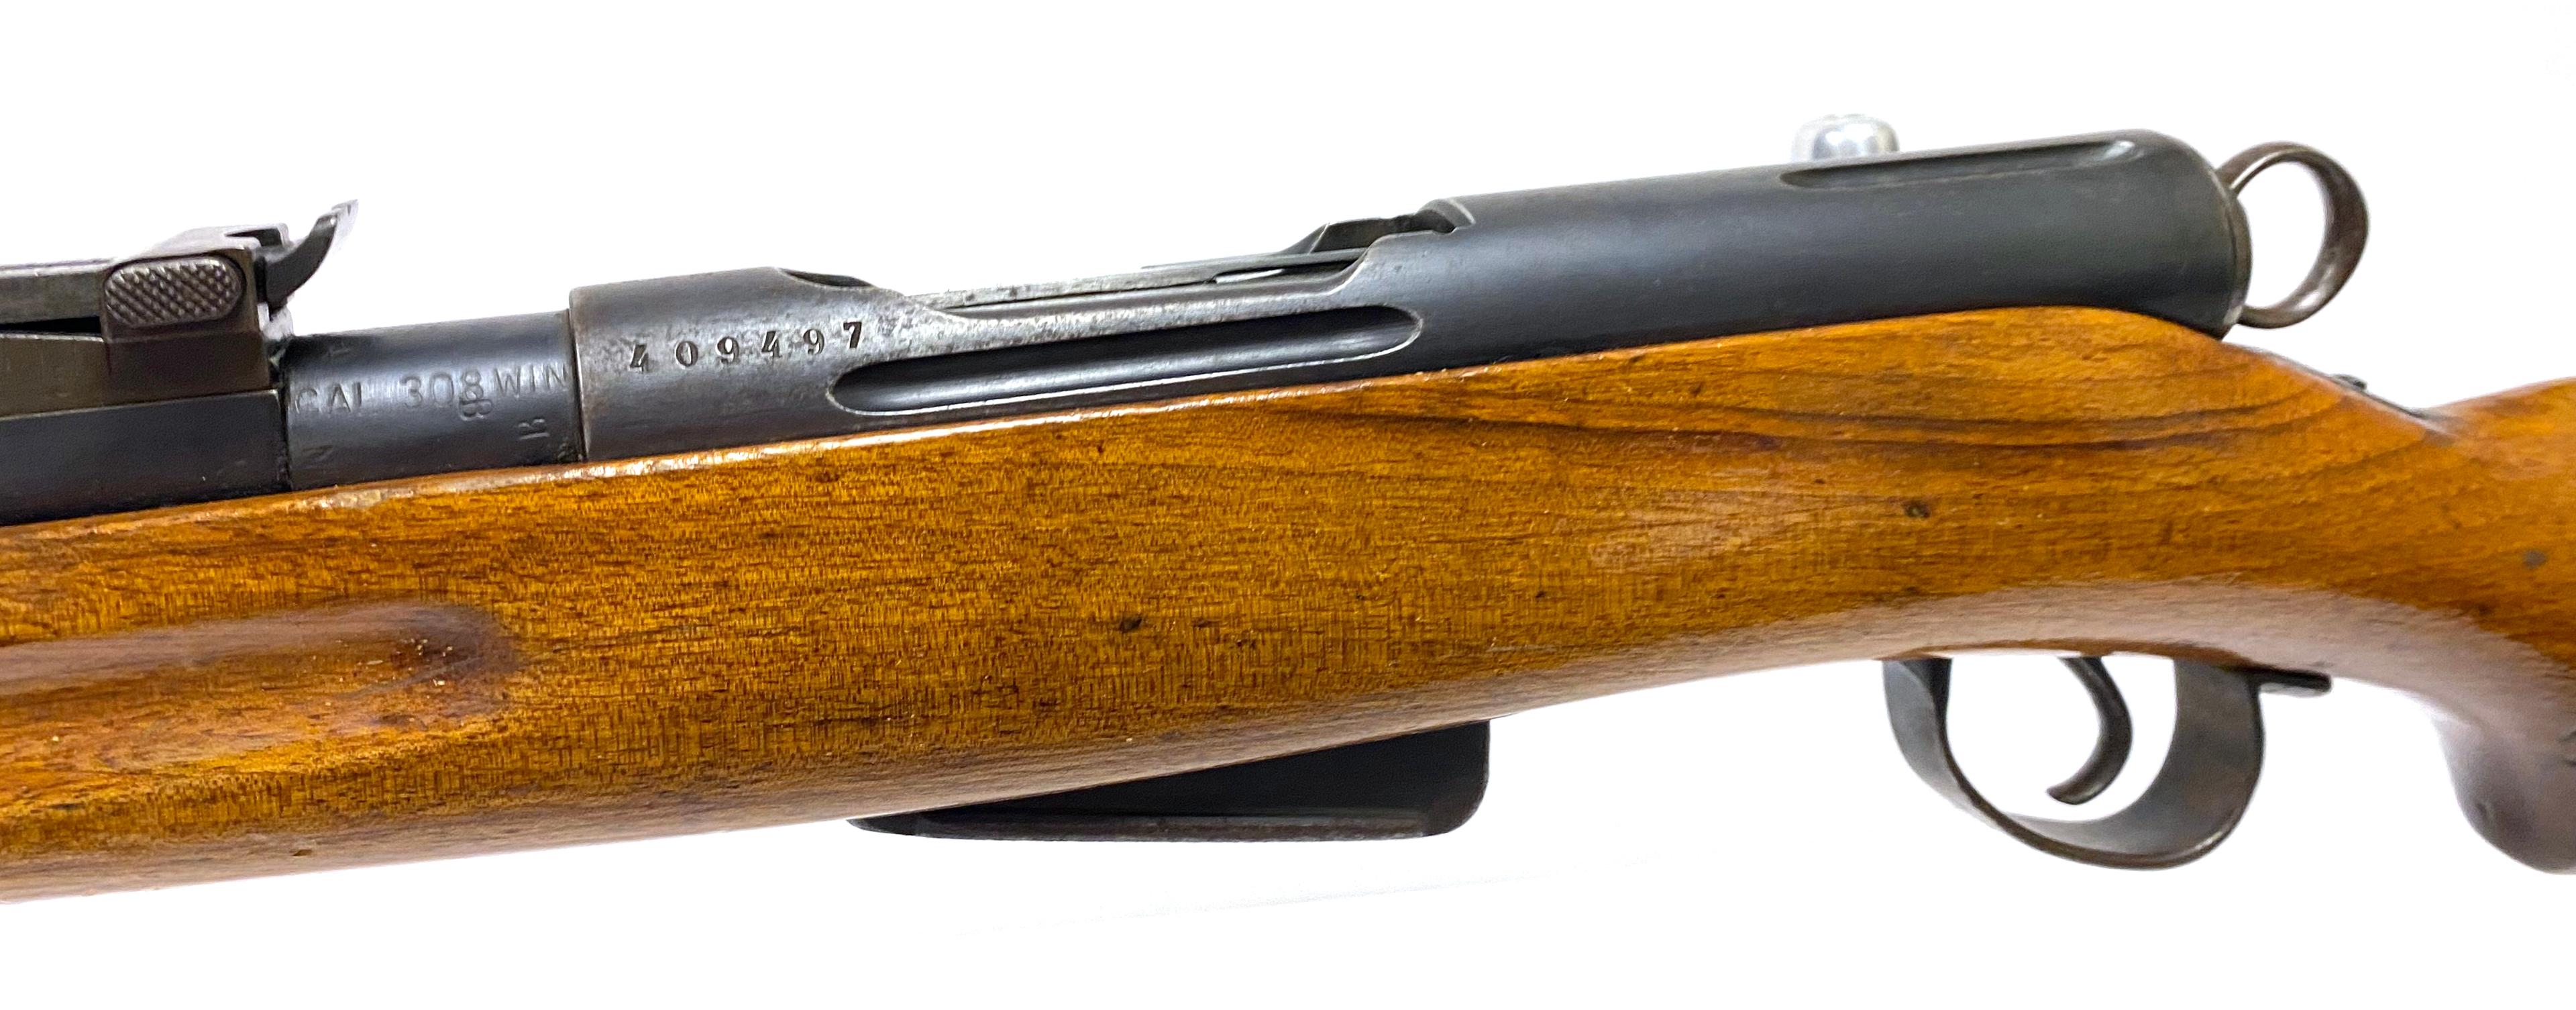 Swiss Schmidt Rubin M1911 (K11) .308 Win. Sporter Rifle